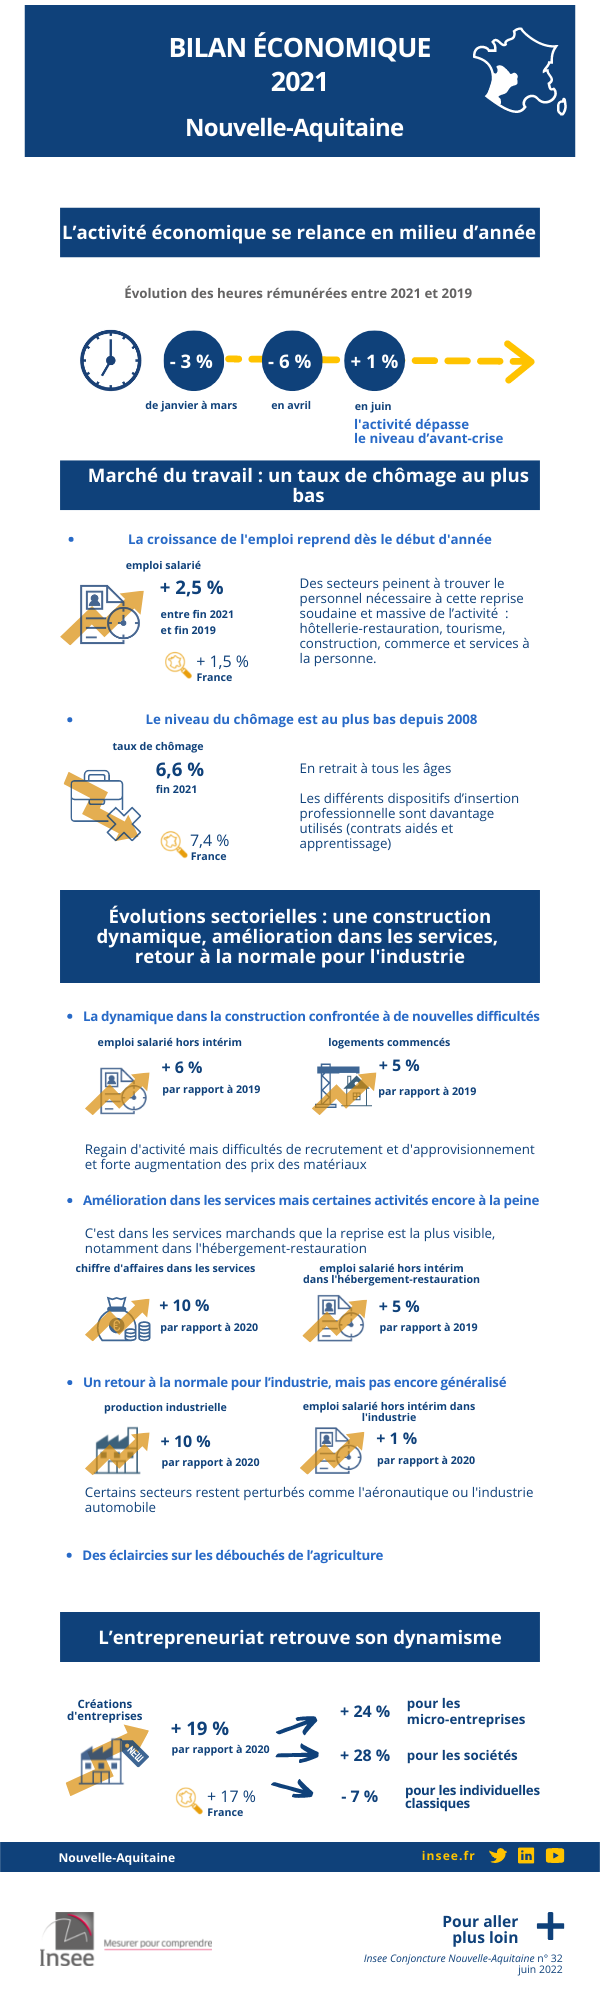 Infographie du bilan économique 2021 de Nouvelle-Aquitaine.